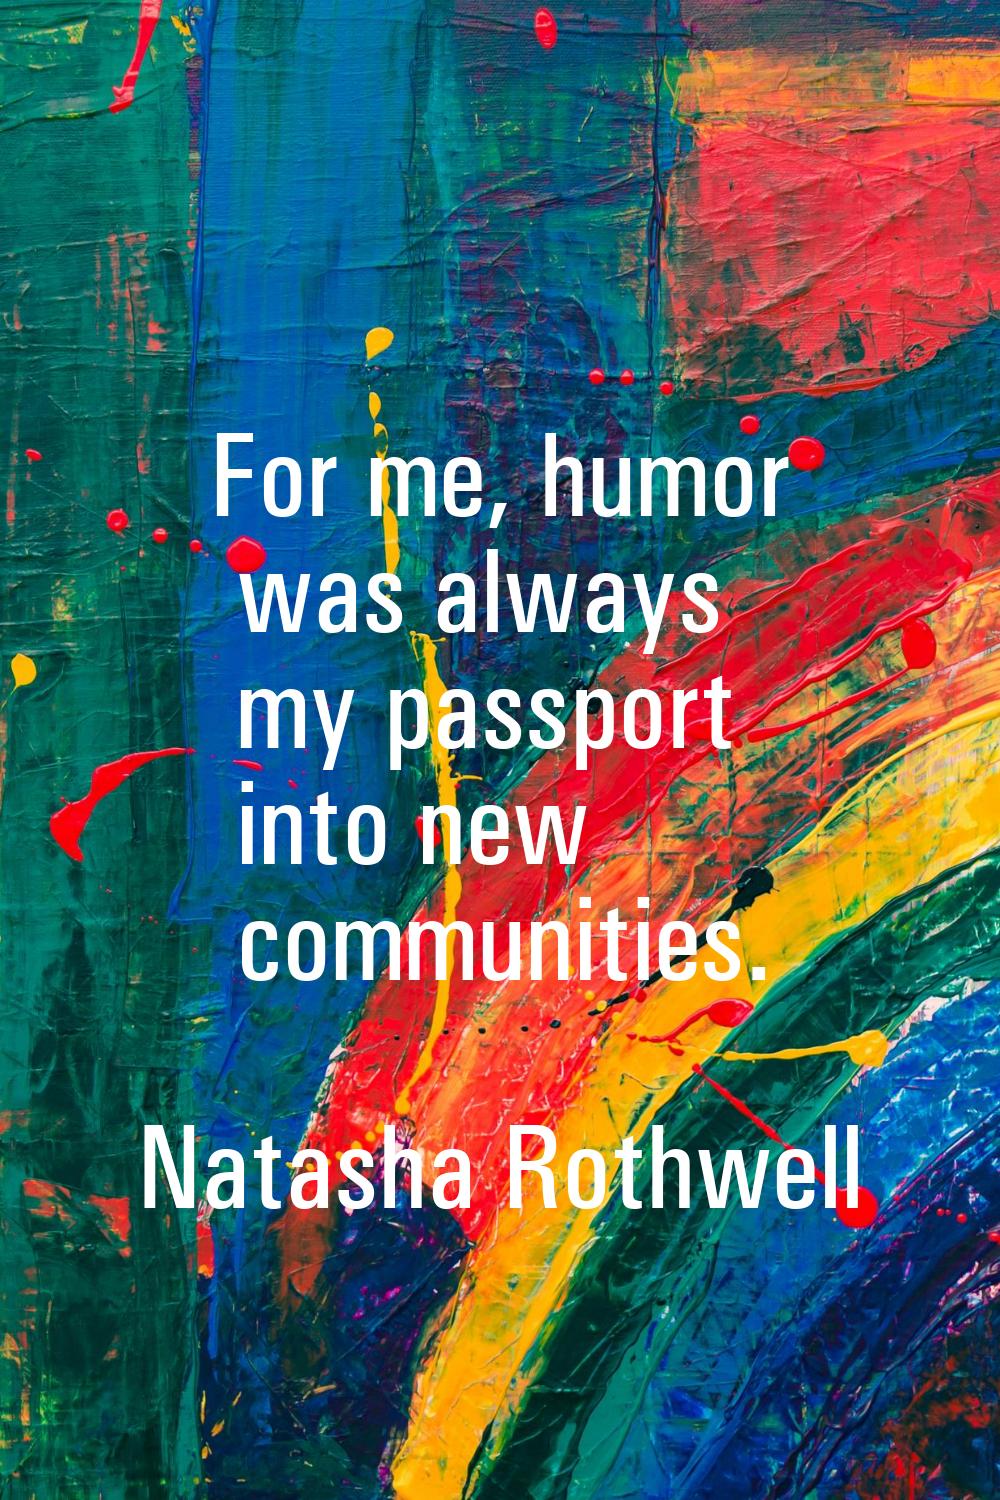 For me, humor was always my passport into new communities.